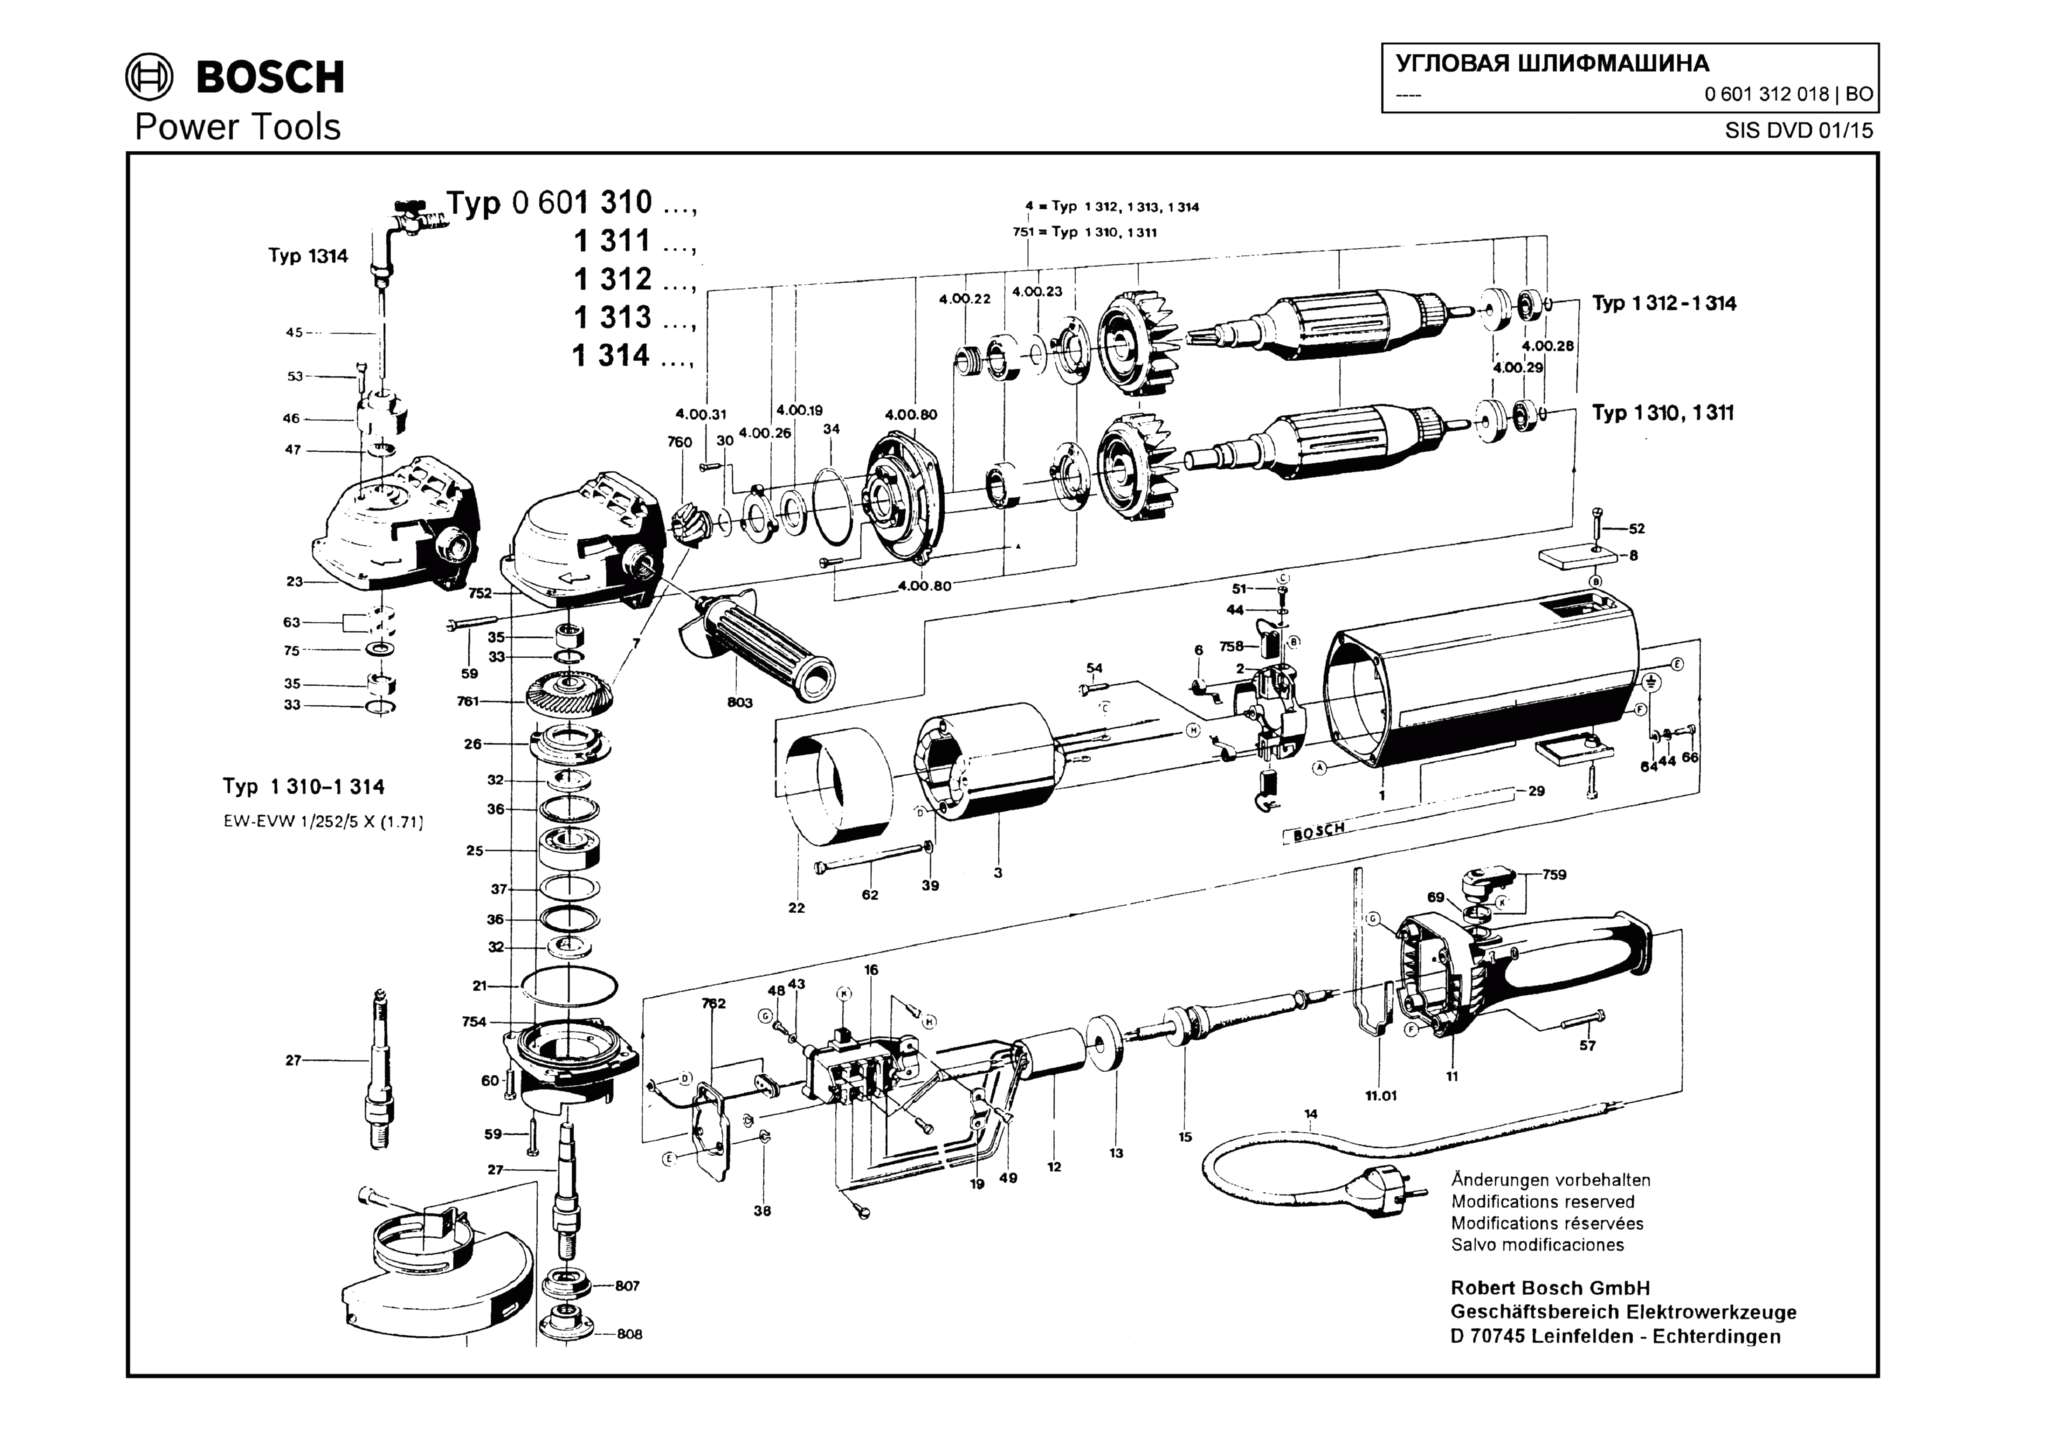 Запчасти, схема и деталировка Bosch (ТИП 0601312018)